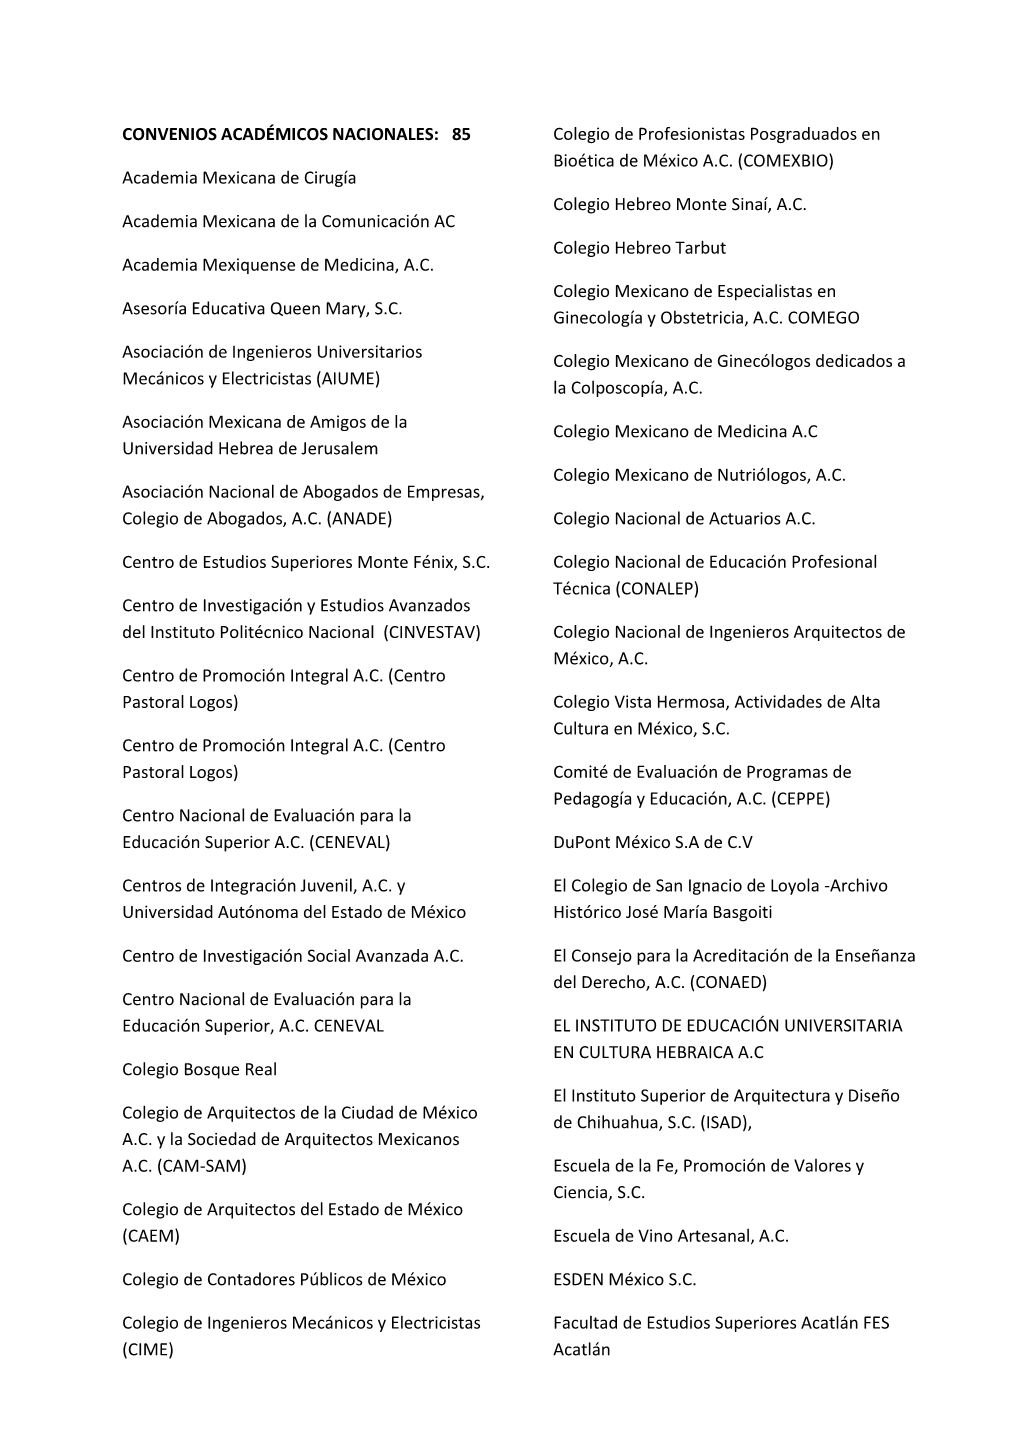 CONVENIOS ACADÉMICOS NACIONALES: 85 Academia Mexicana De Cirugía Academia Mexicana De La Comunicación AC Academia Mexiquen